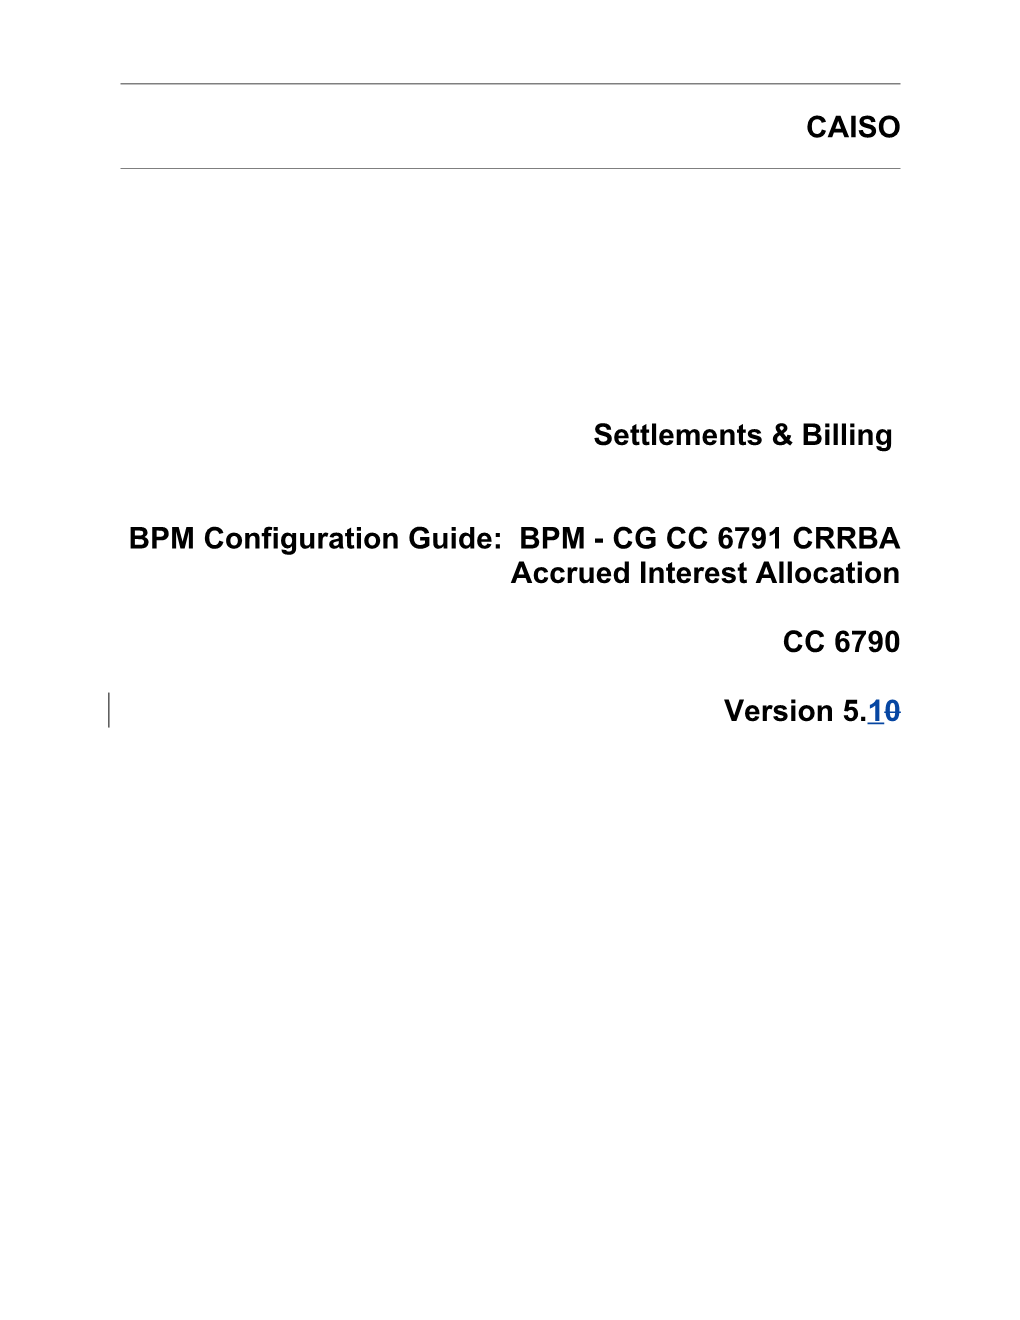 BPM - CG CC 6791 CRRBA Accrued Interest Allocation